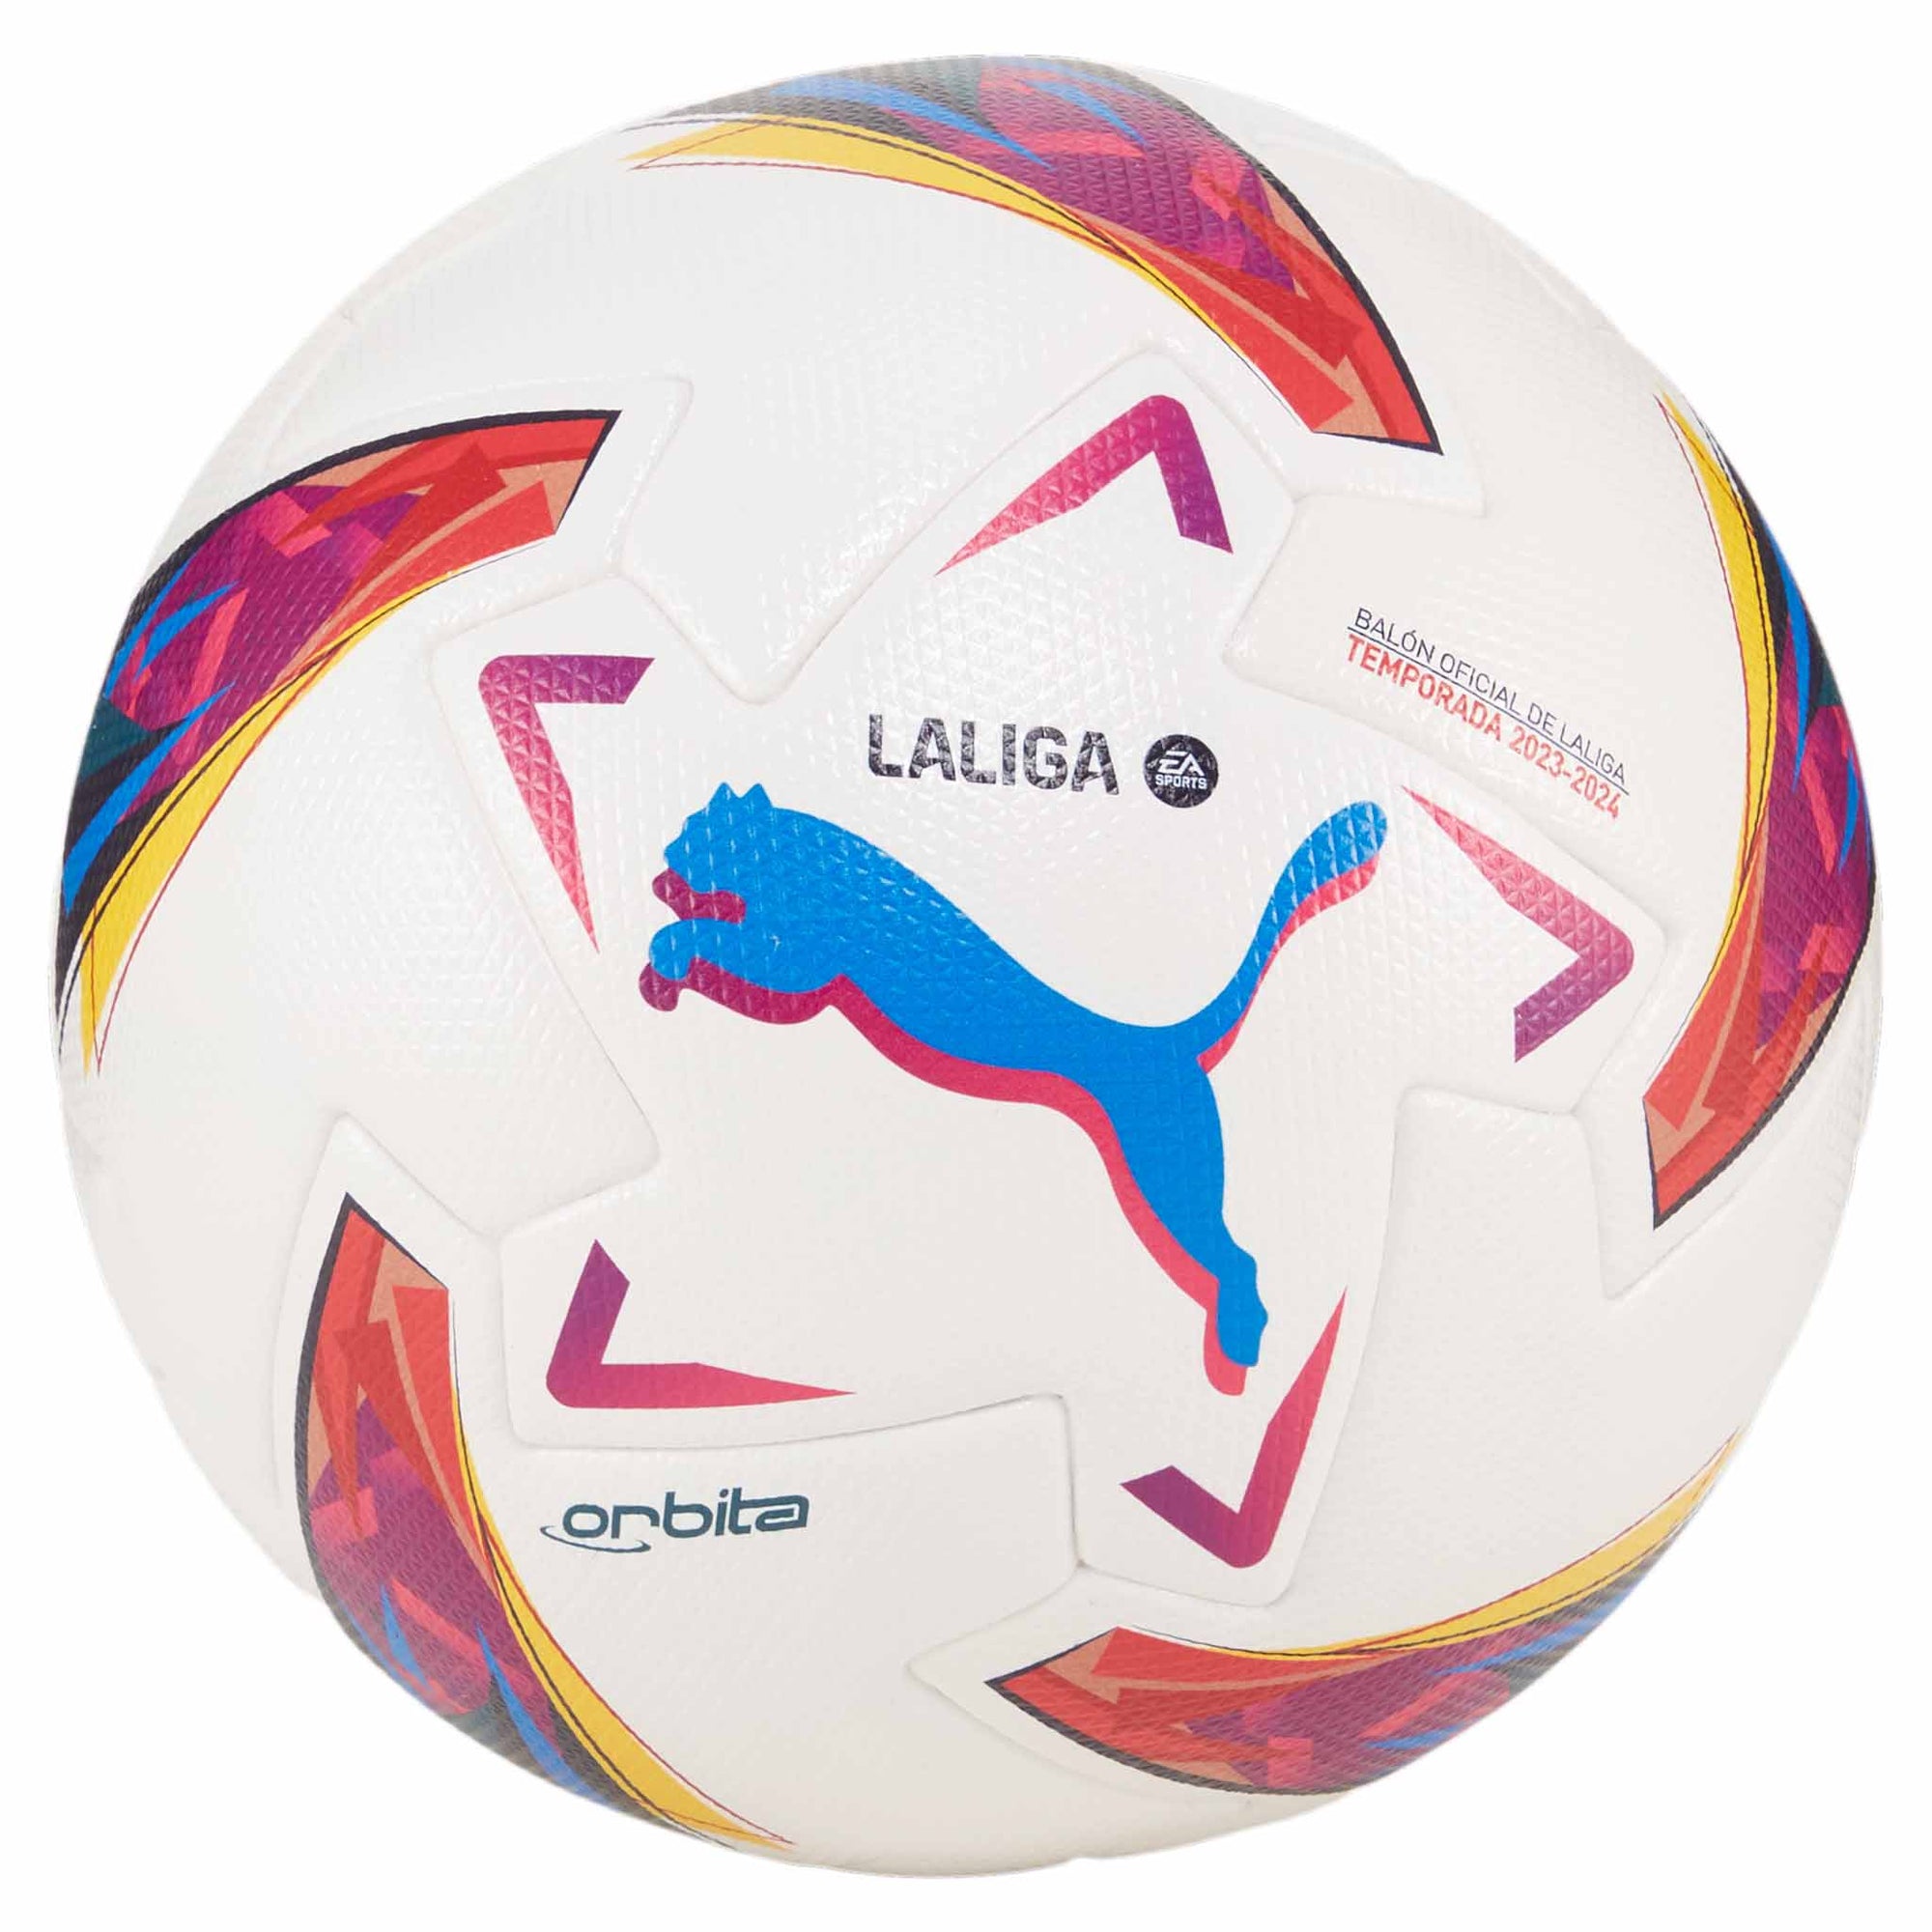 Puma Orbita La Liga 1 FIFA Quality Pro ballon de match de soccer - Puma White / Multicolor